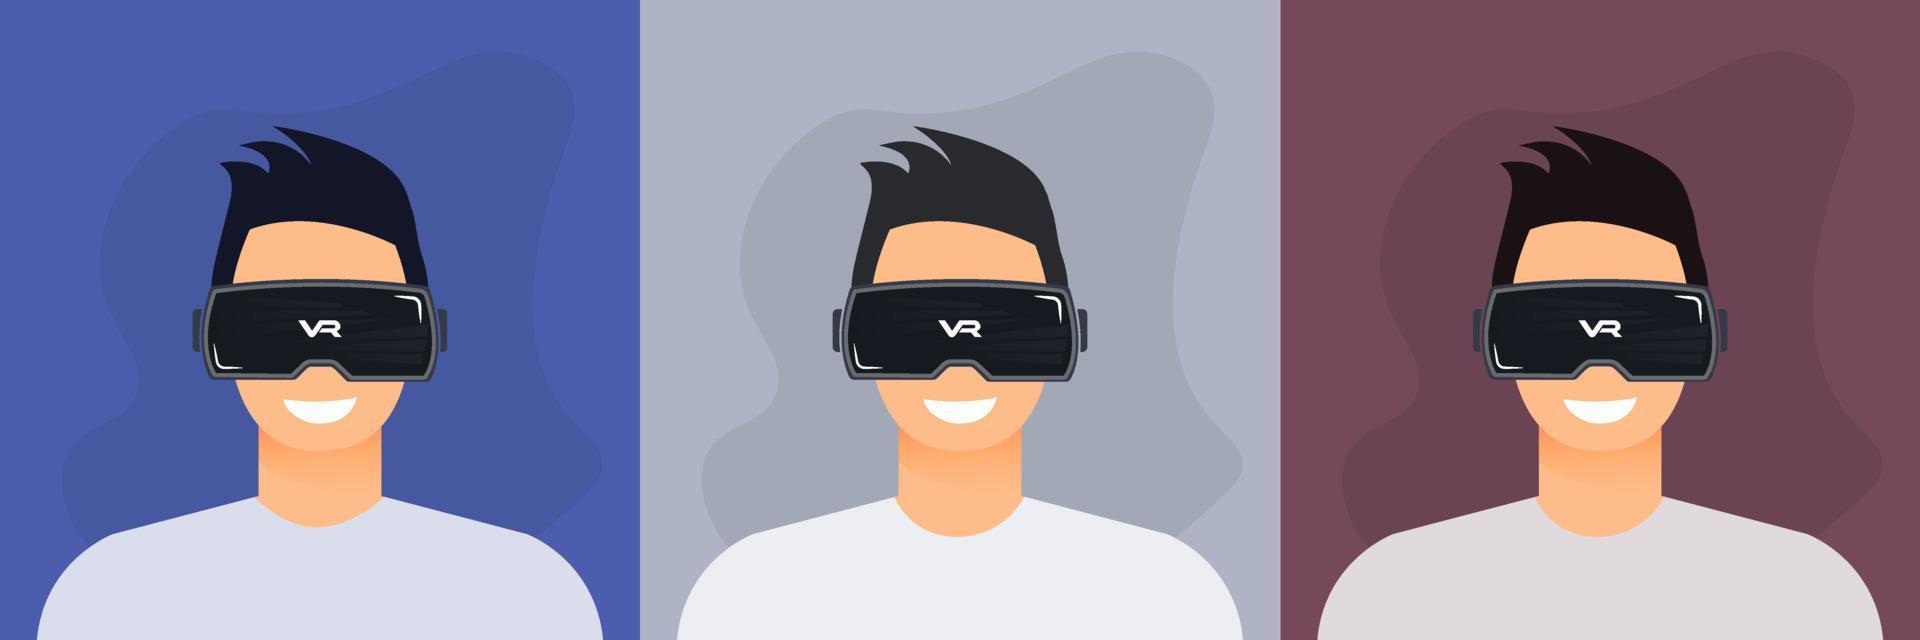 personnage masculin utilisant un appareil de réalité virtuelle. métaverse, vr, futur, gadgets, technologie, éducation en ligne, éducation, concept de jeu vidéo. illustration vectorielle vecteur